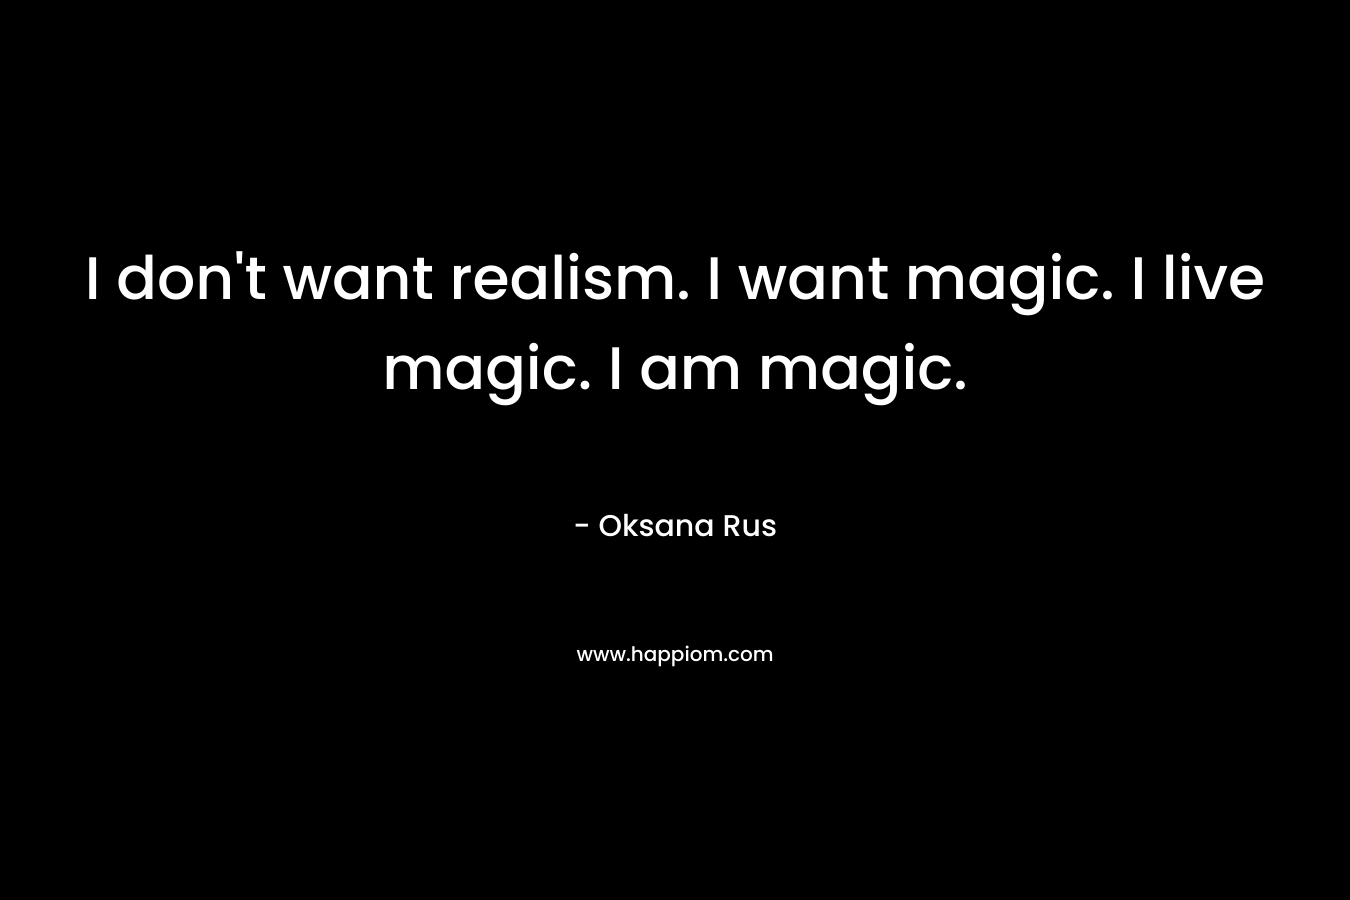 I don't want realism. I want magic. I live magic. I am magic.